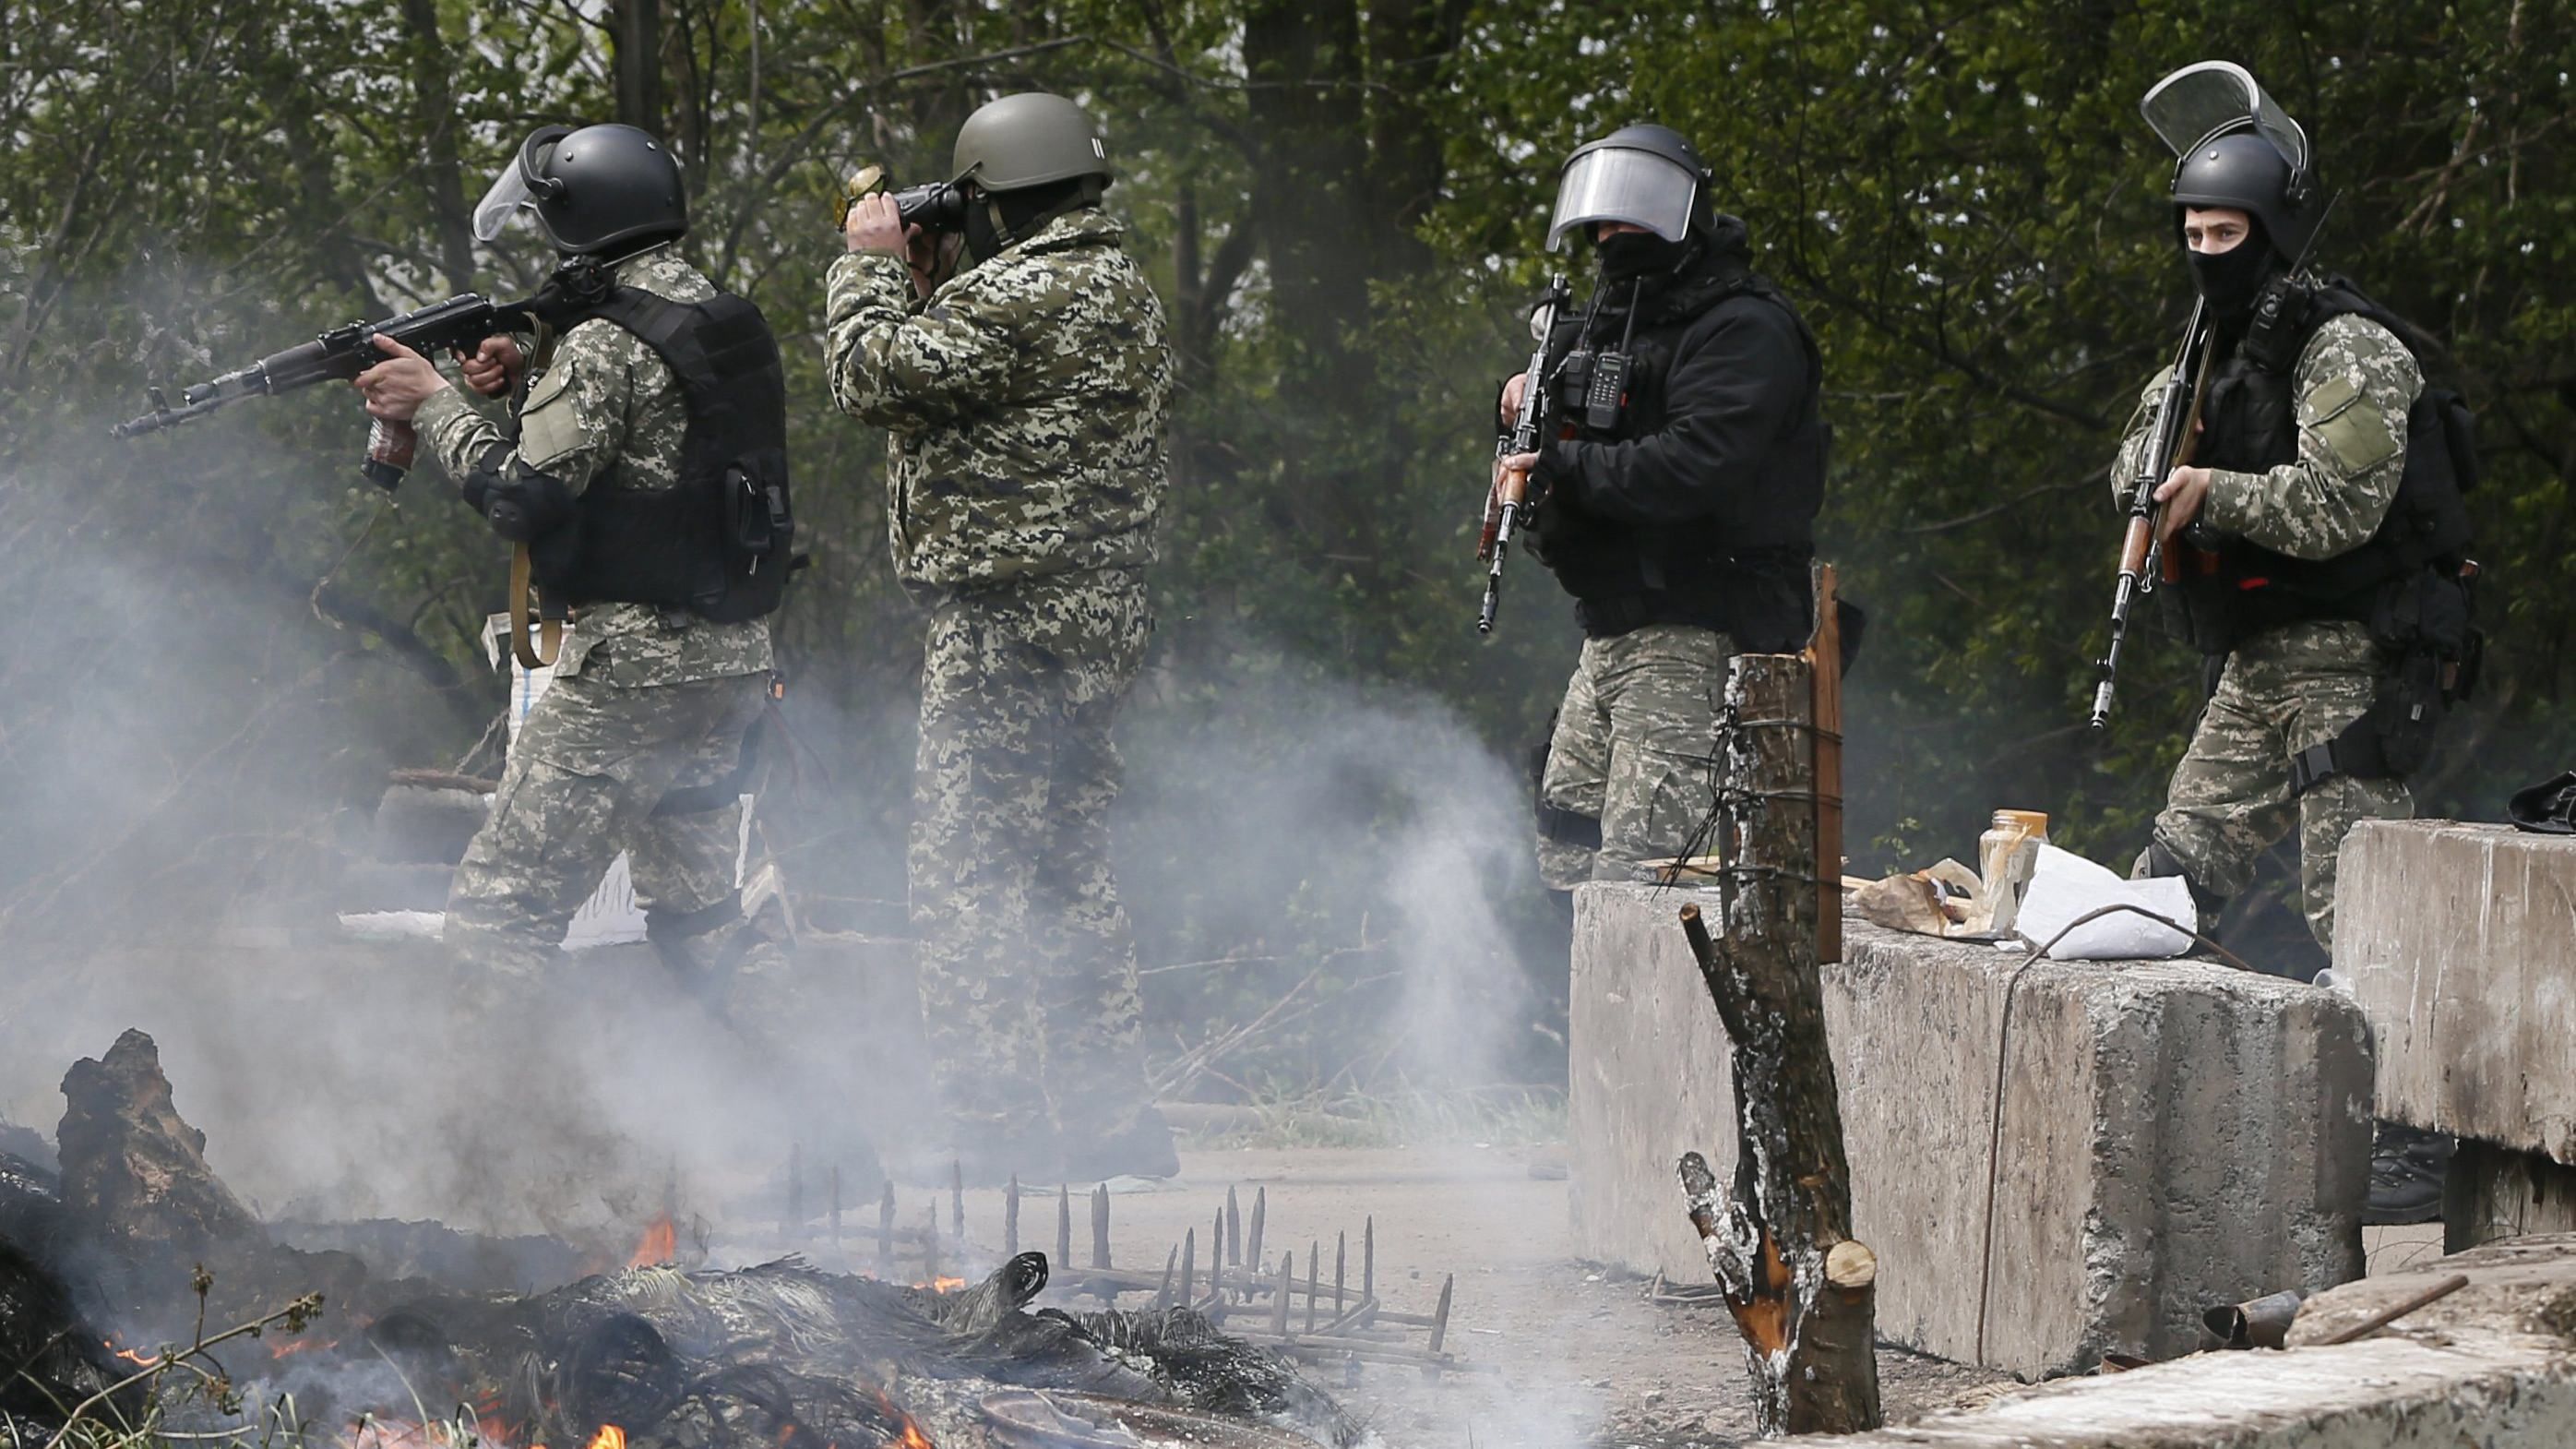 ОС на Луганщине проведут антитеррористическую операцию: просят жителей не покидать дома